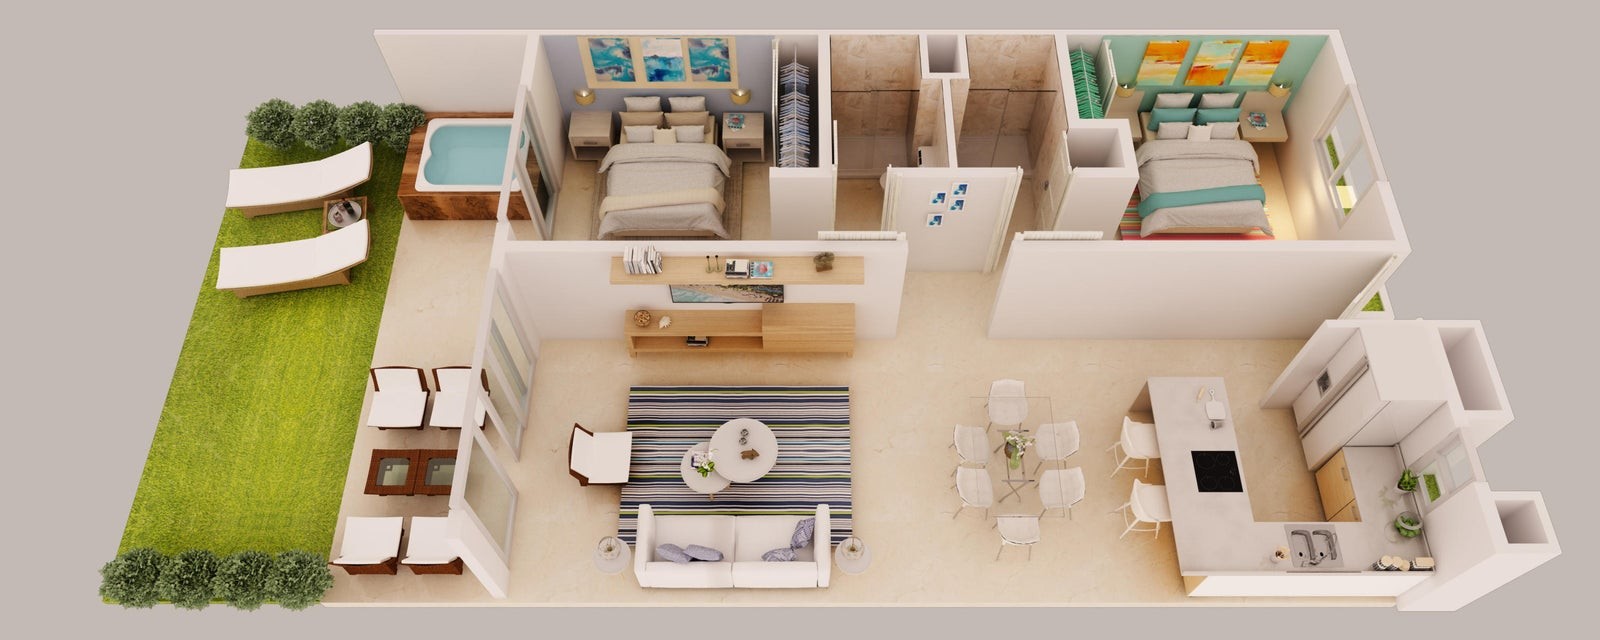 apartamentos - Apartamento a estrenar en venta #23-698 con 2 hab. 2 baños,  piscina, gimnasio. 0